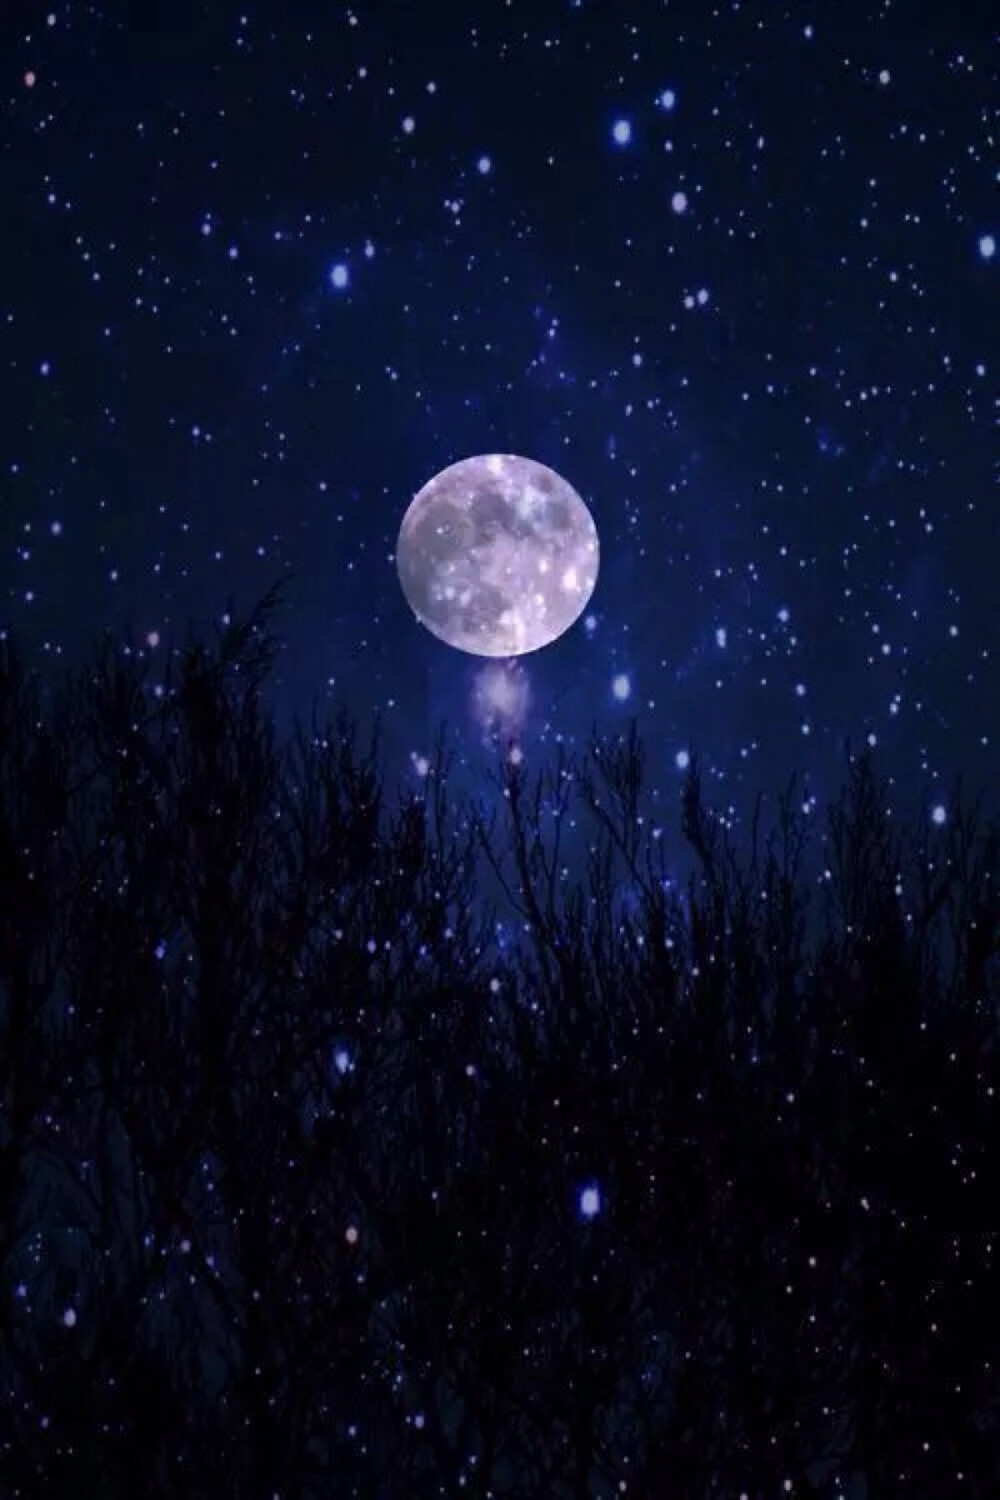 唯美星空 夜景 夜空 树木 星光 月光 明月 静谧 自然风景 iphone手机